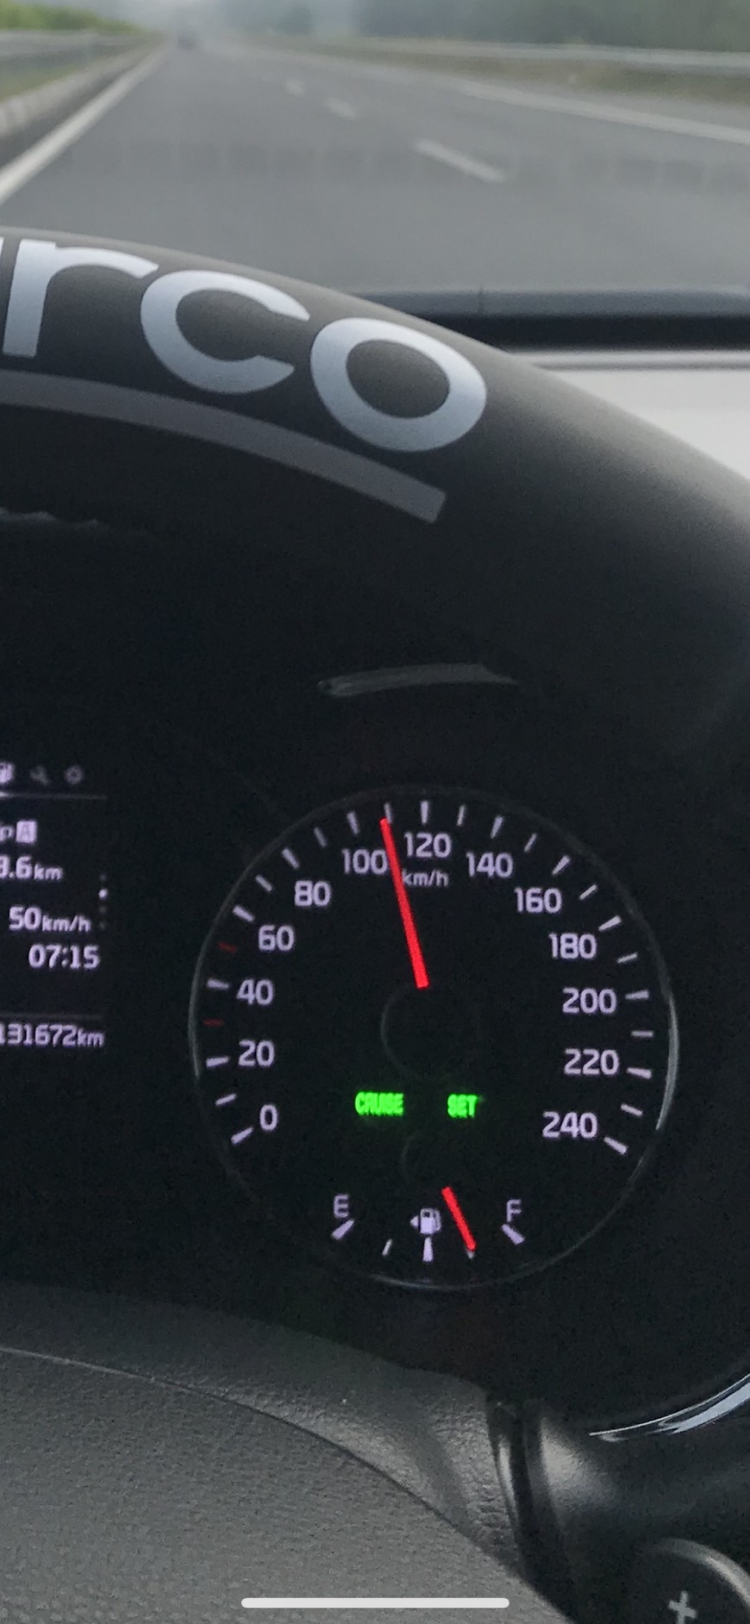 2 vạch đỏ trên đồng hồ tốc độ xe Kia ở mốc 30 và 50 km/h có ý nghĩa gì?